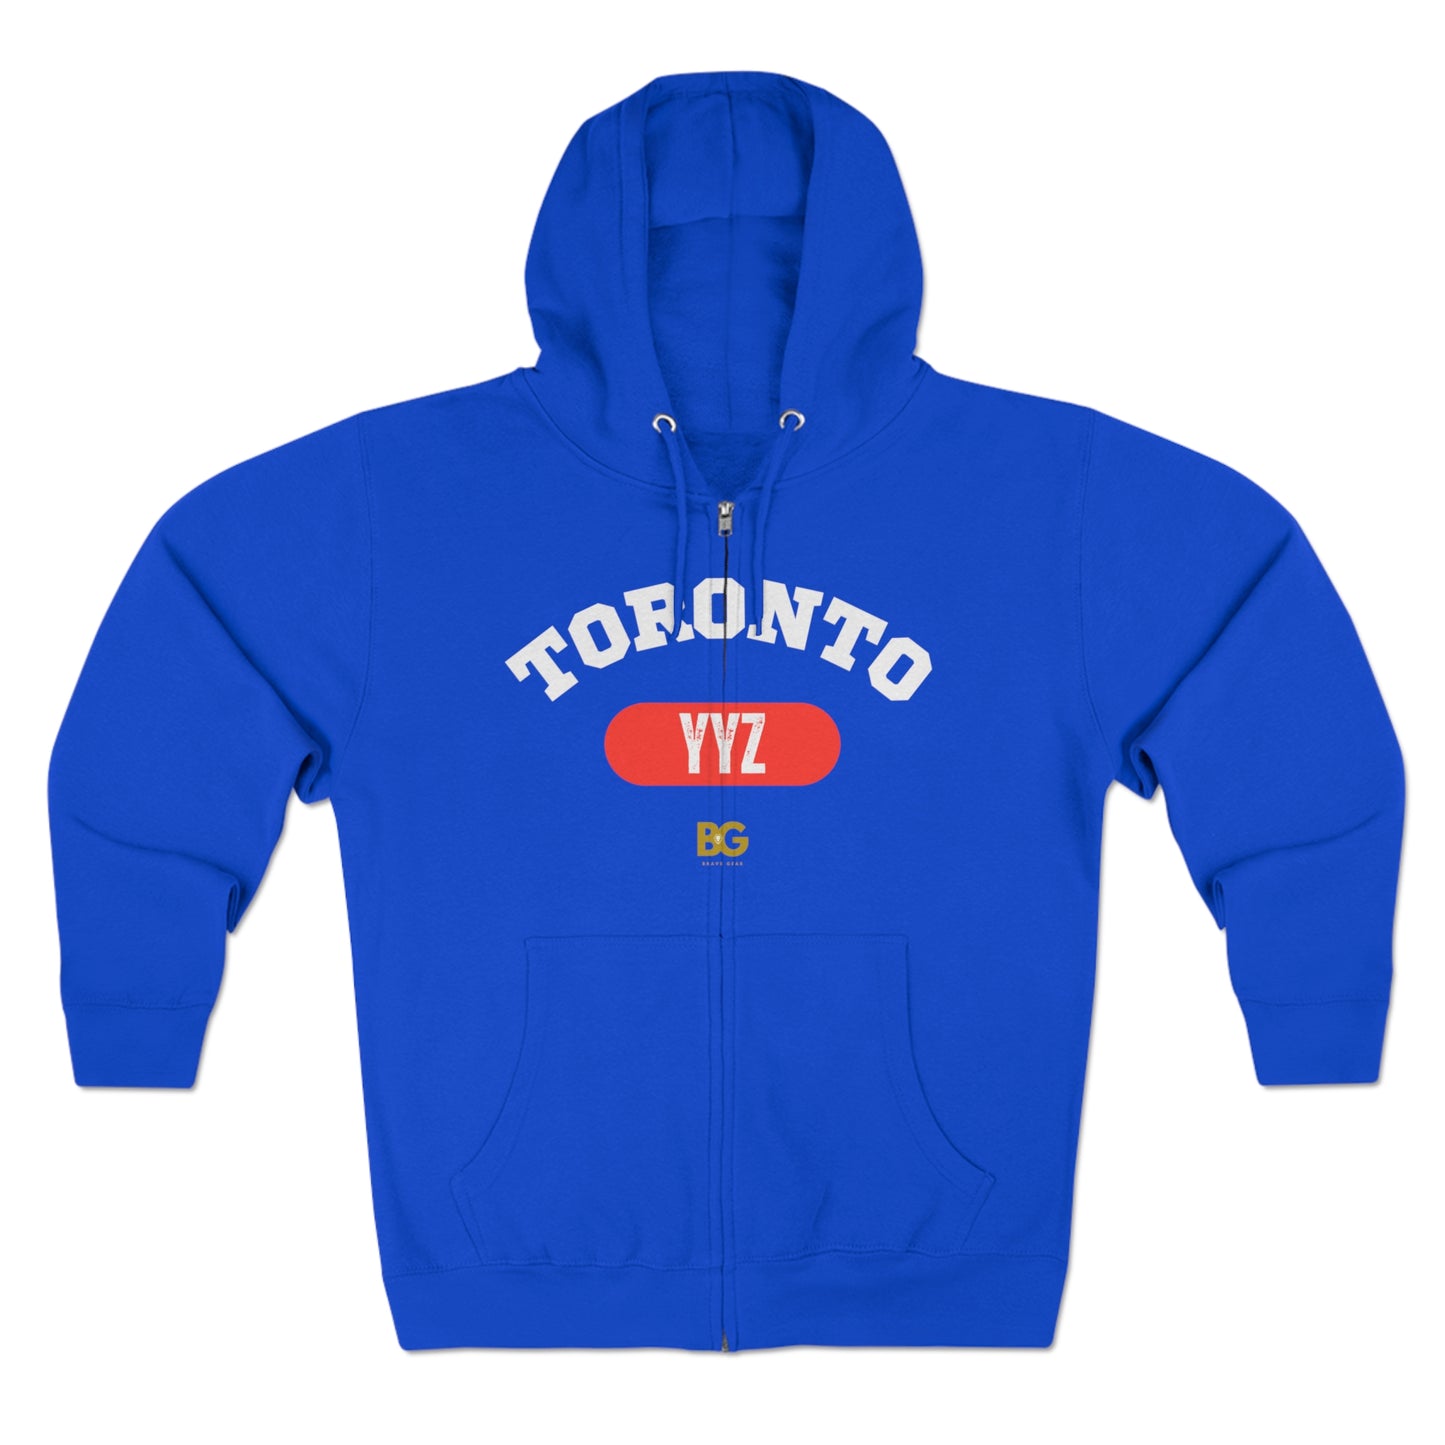 BG "Toronto YYZ" Premium Full Zip Hoodie